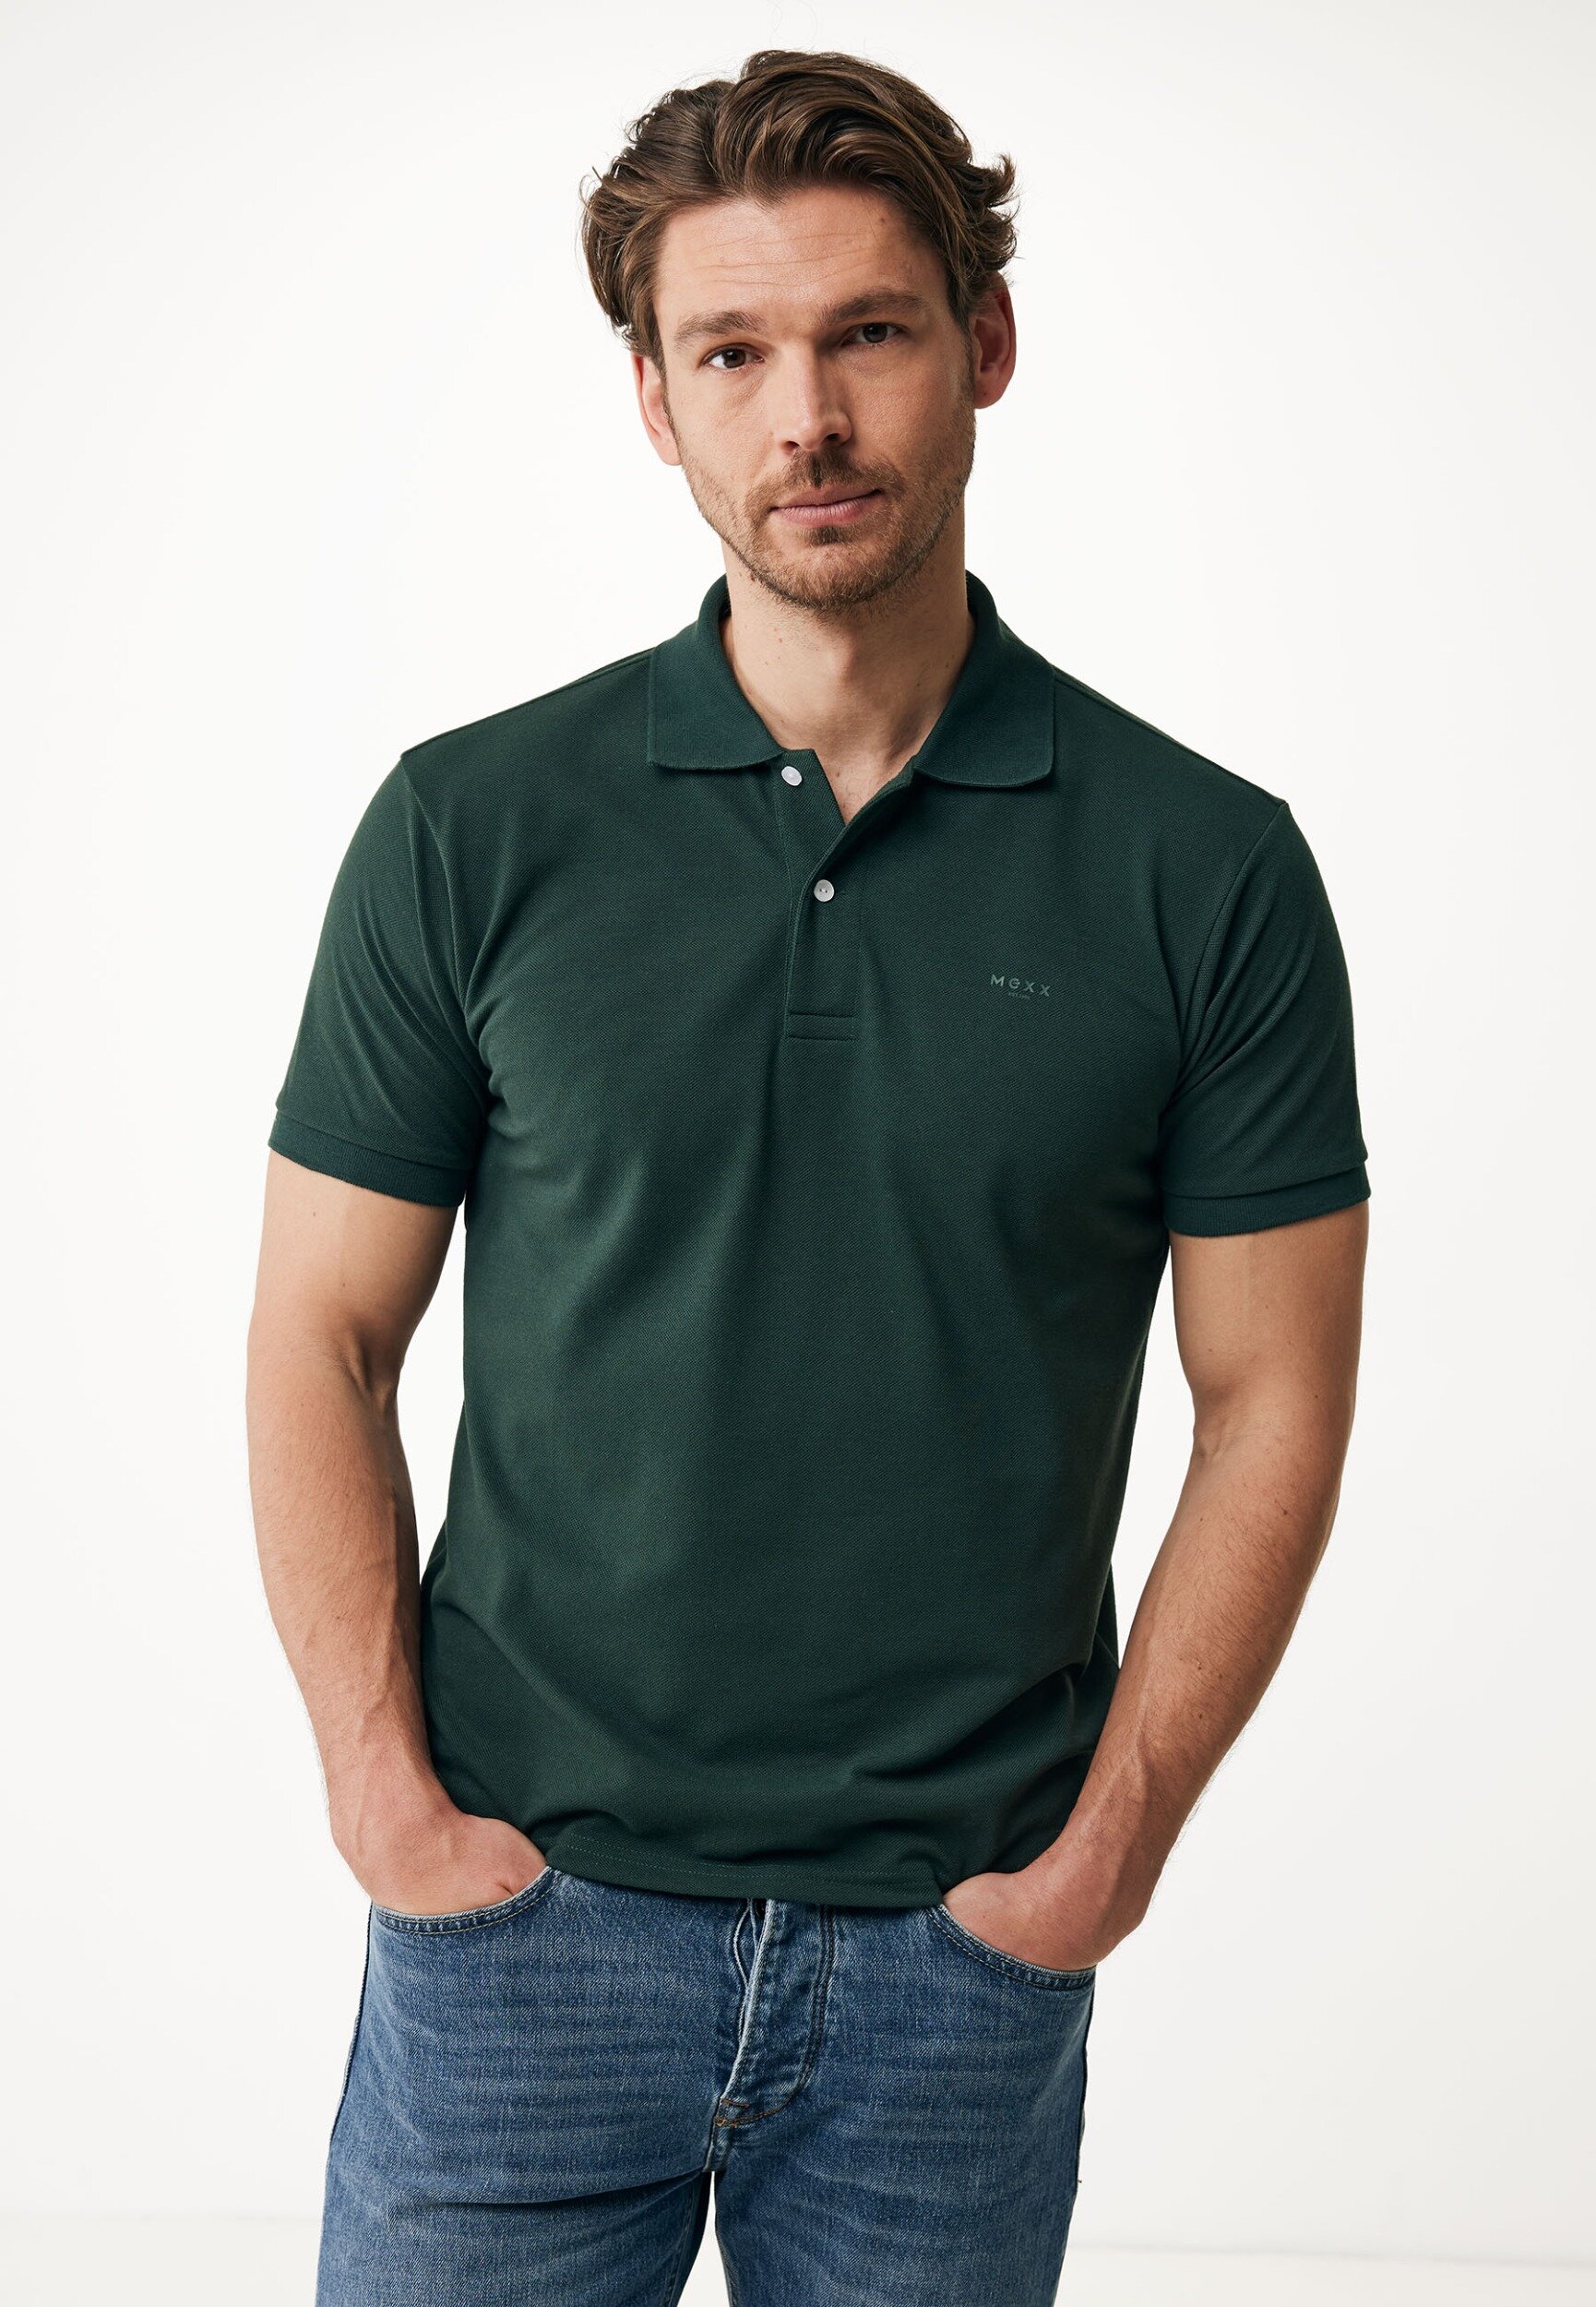 Polo T-Shirt Mannen - Donker Groen - Maat XL